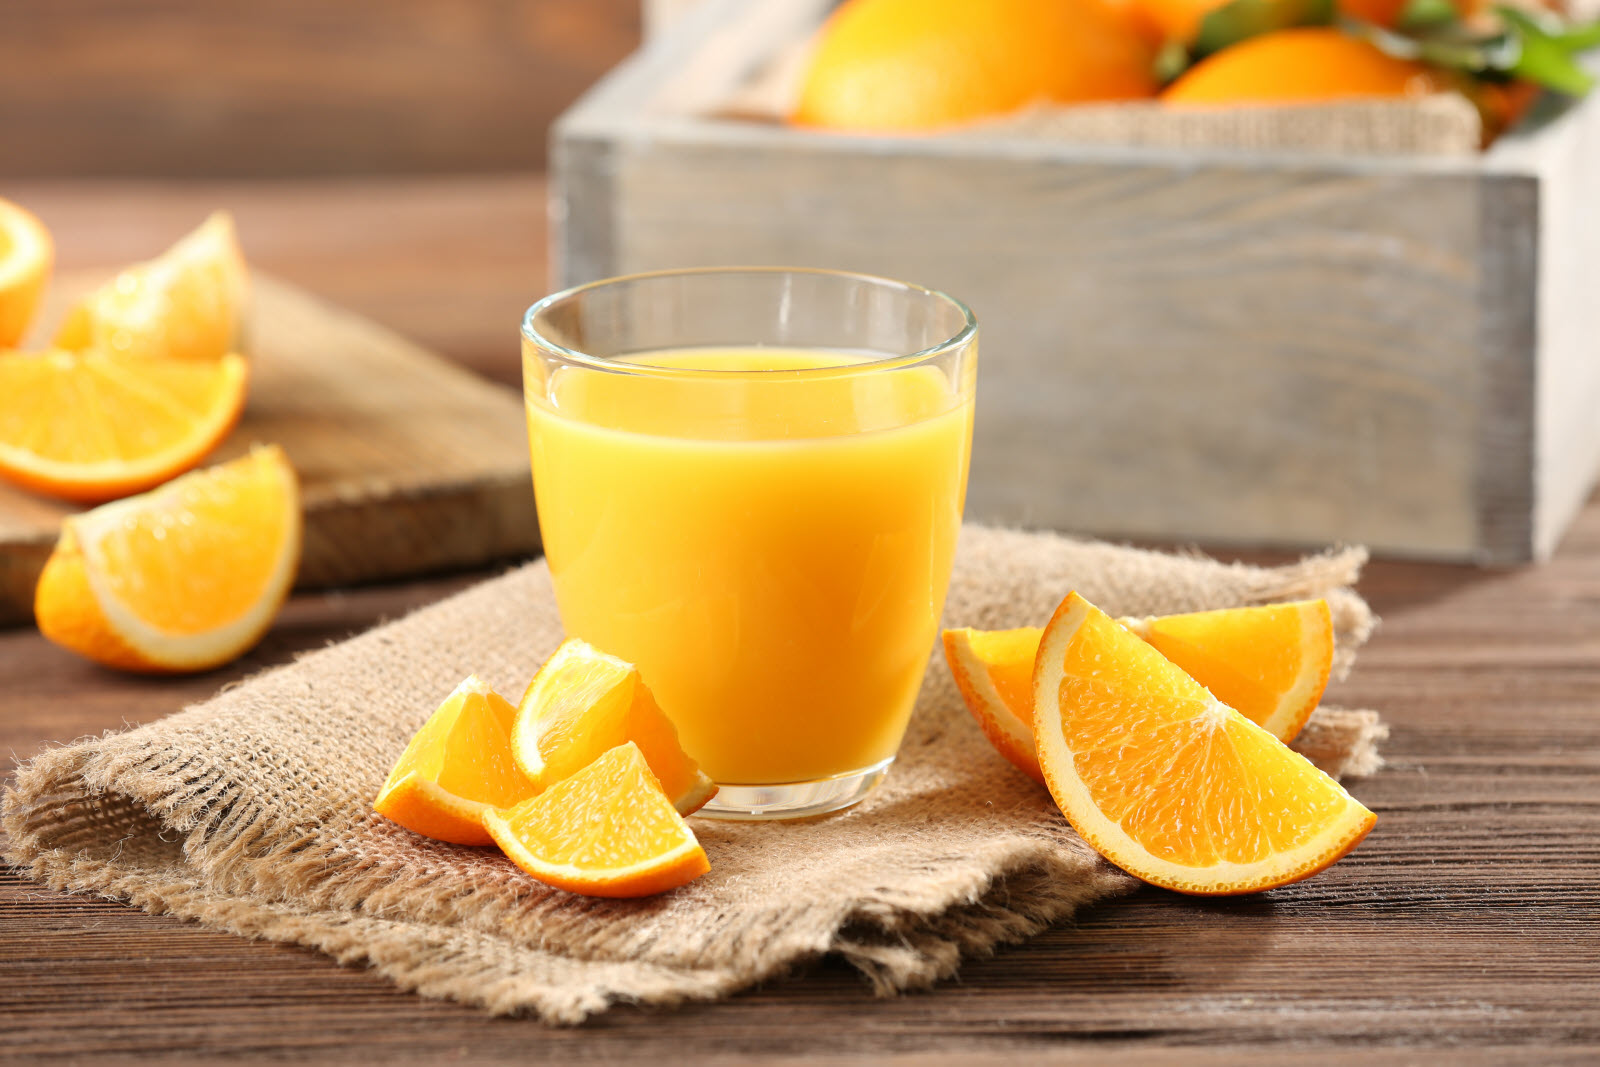 Nước cam vắt có chứa một lượng lớn dưỡng chất thiết yếu cho cơ thể